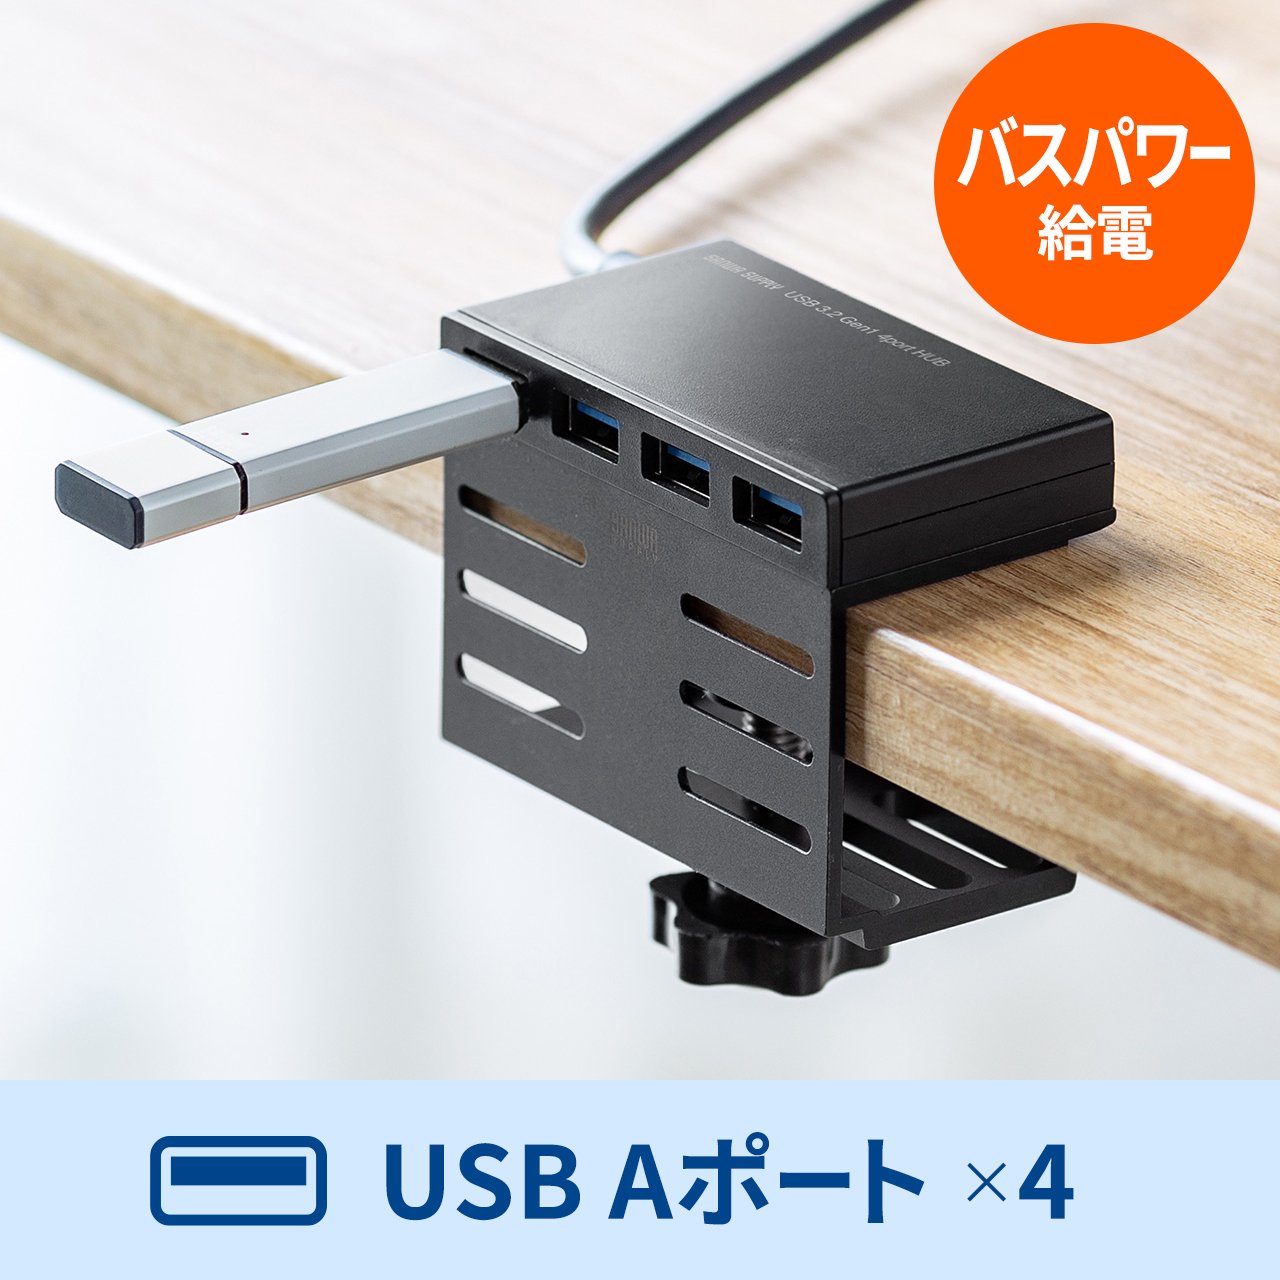 USBハブ クランプ式 USB-A USB3.2 Gen1 4ポート机 固定 ケーブル長1m 400-HUBA097+400-HUBCLAMPのセット  402-HUBA097SET1